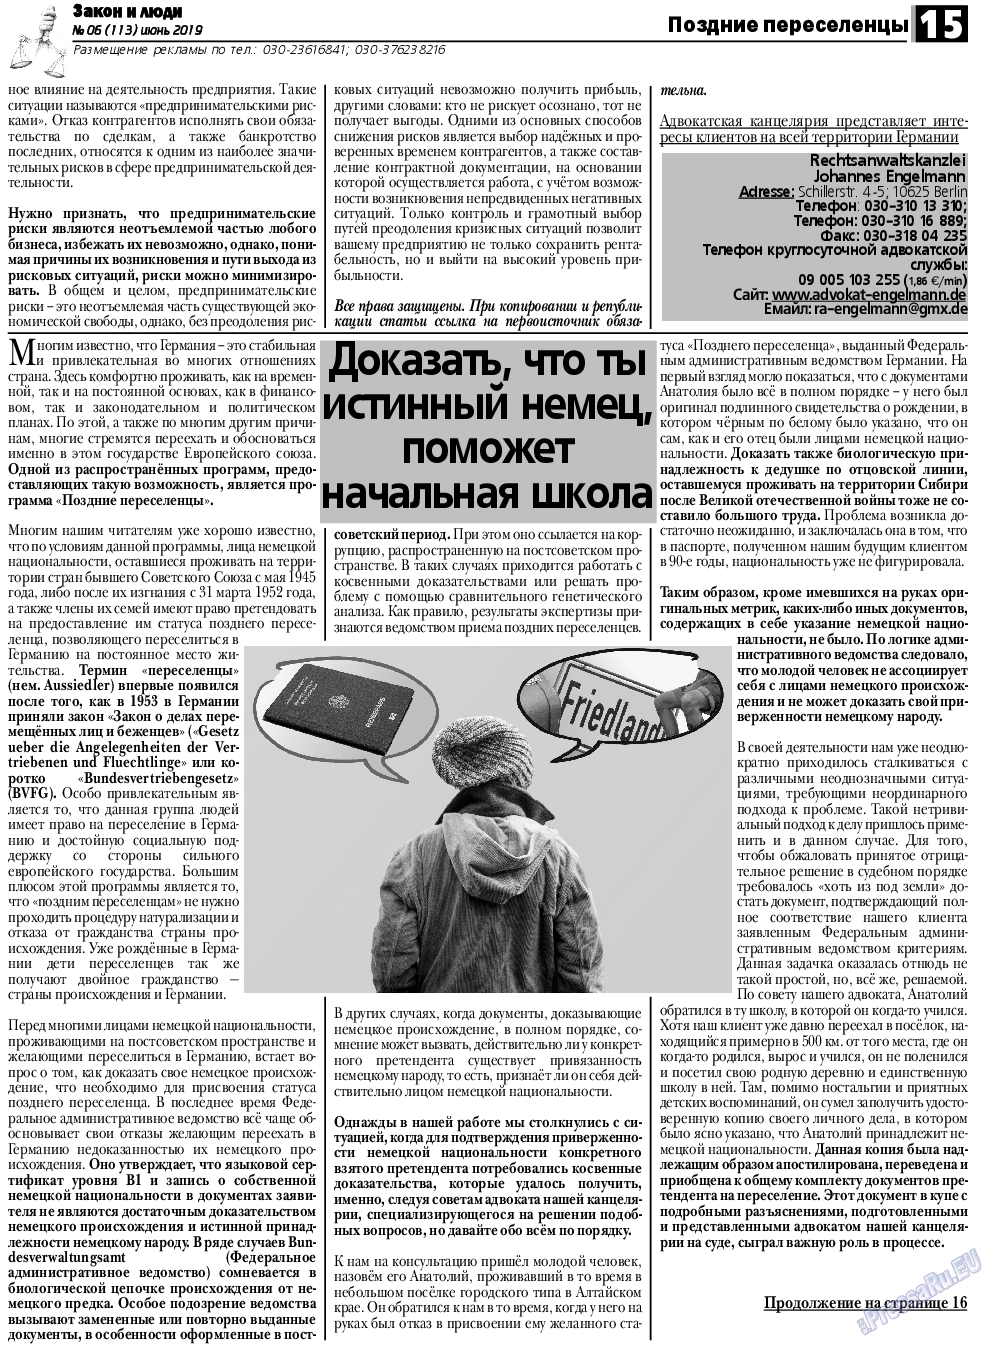 Закон и люди, газета. 2019 №6 стр.15